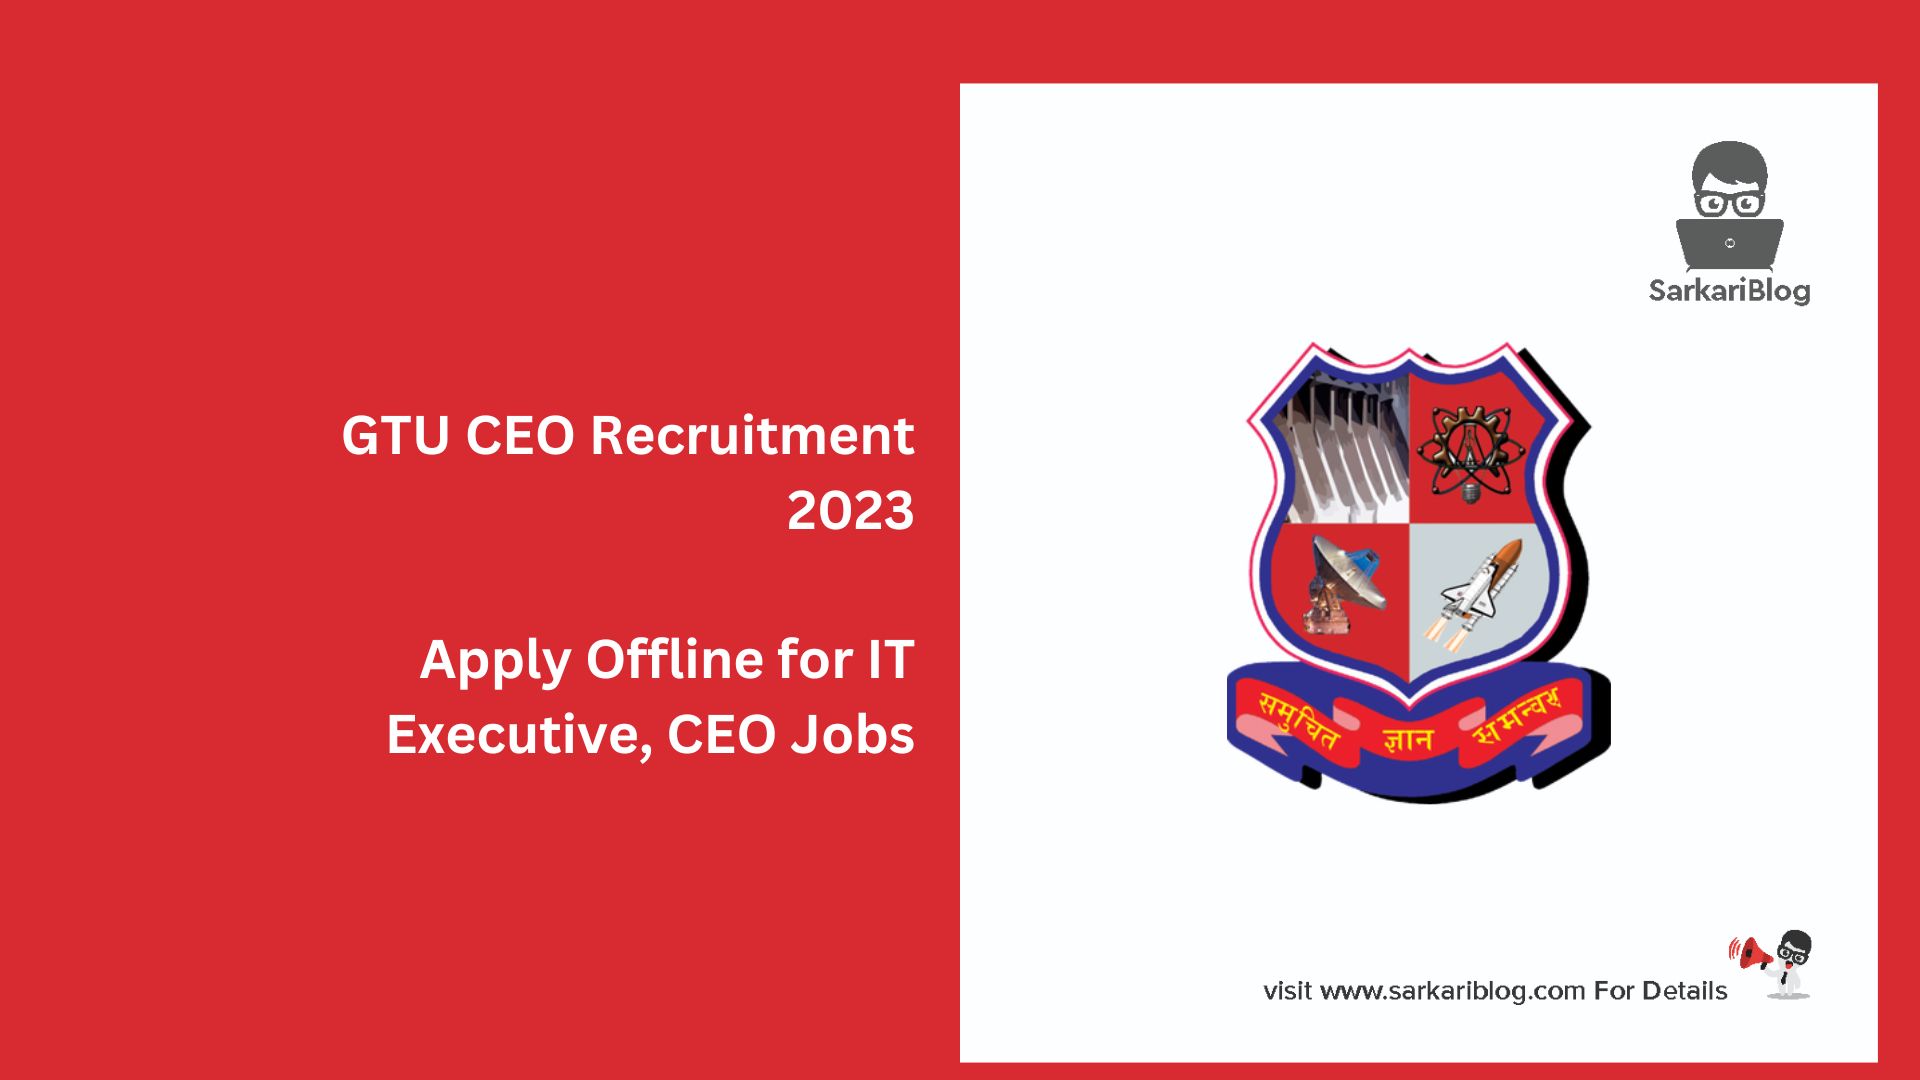 GTU CEO Recruitment 2023